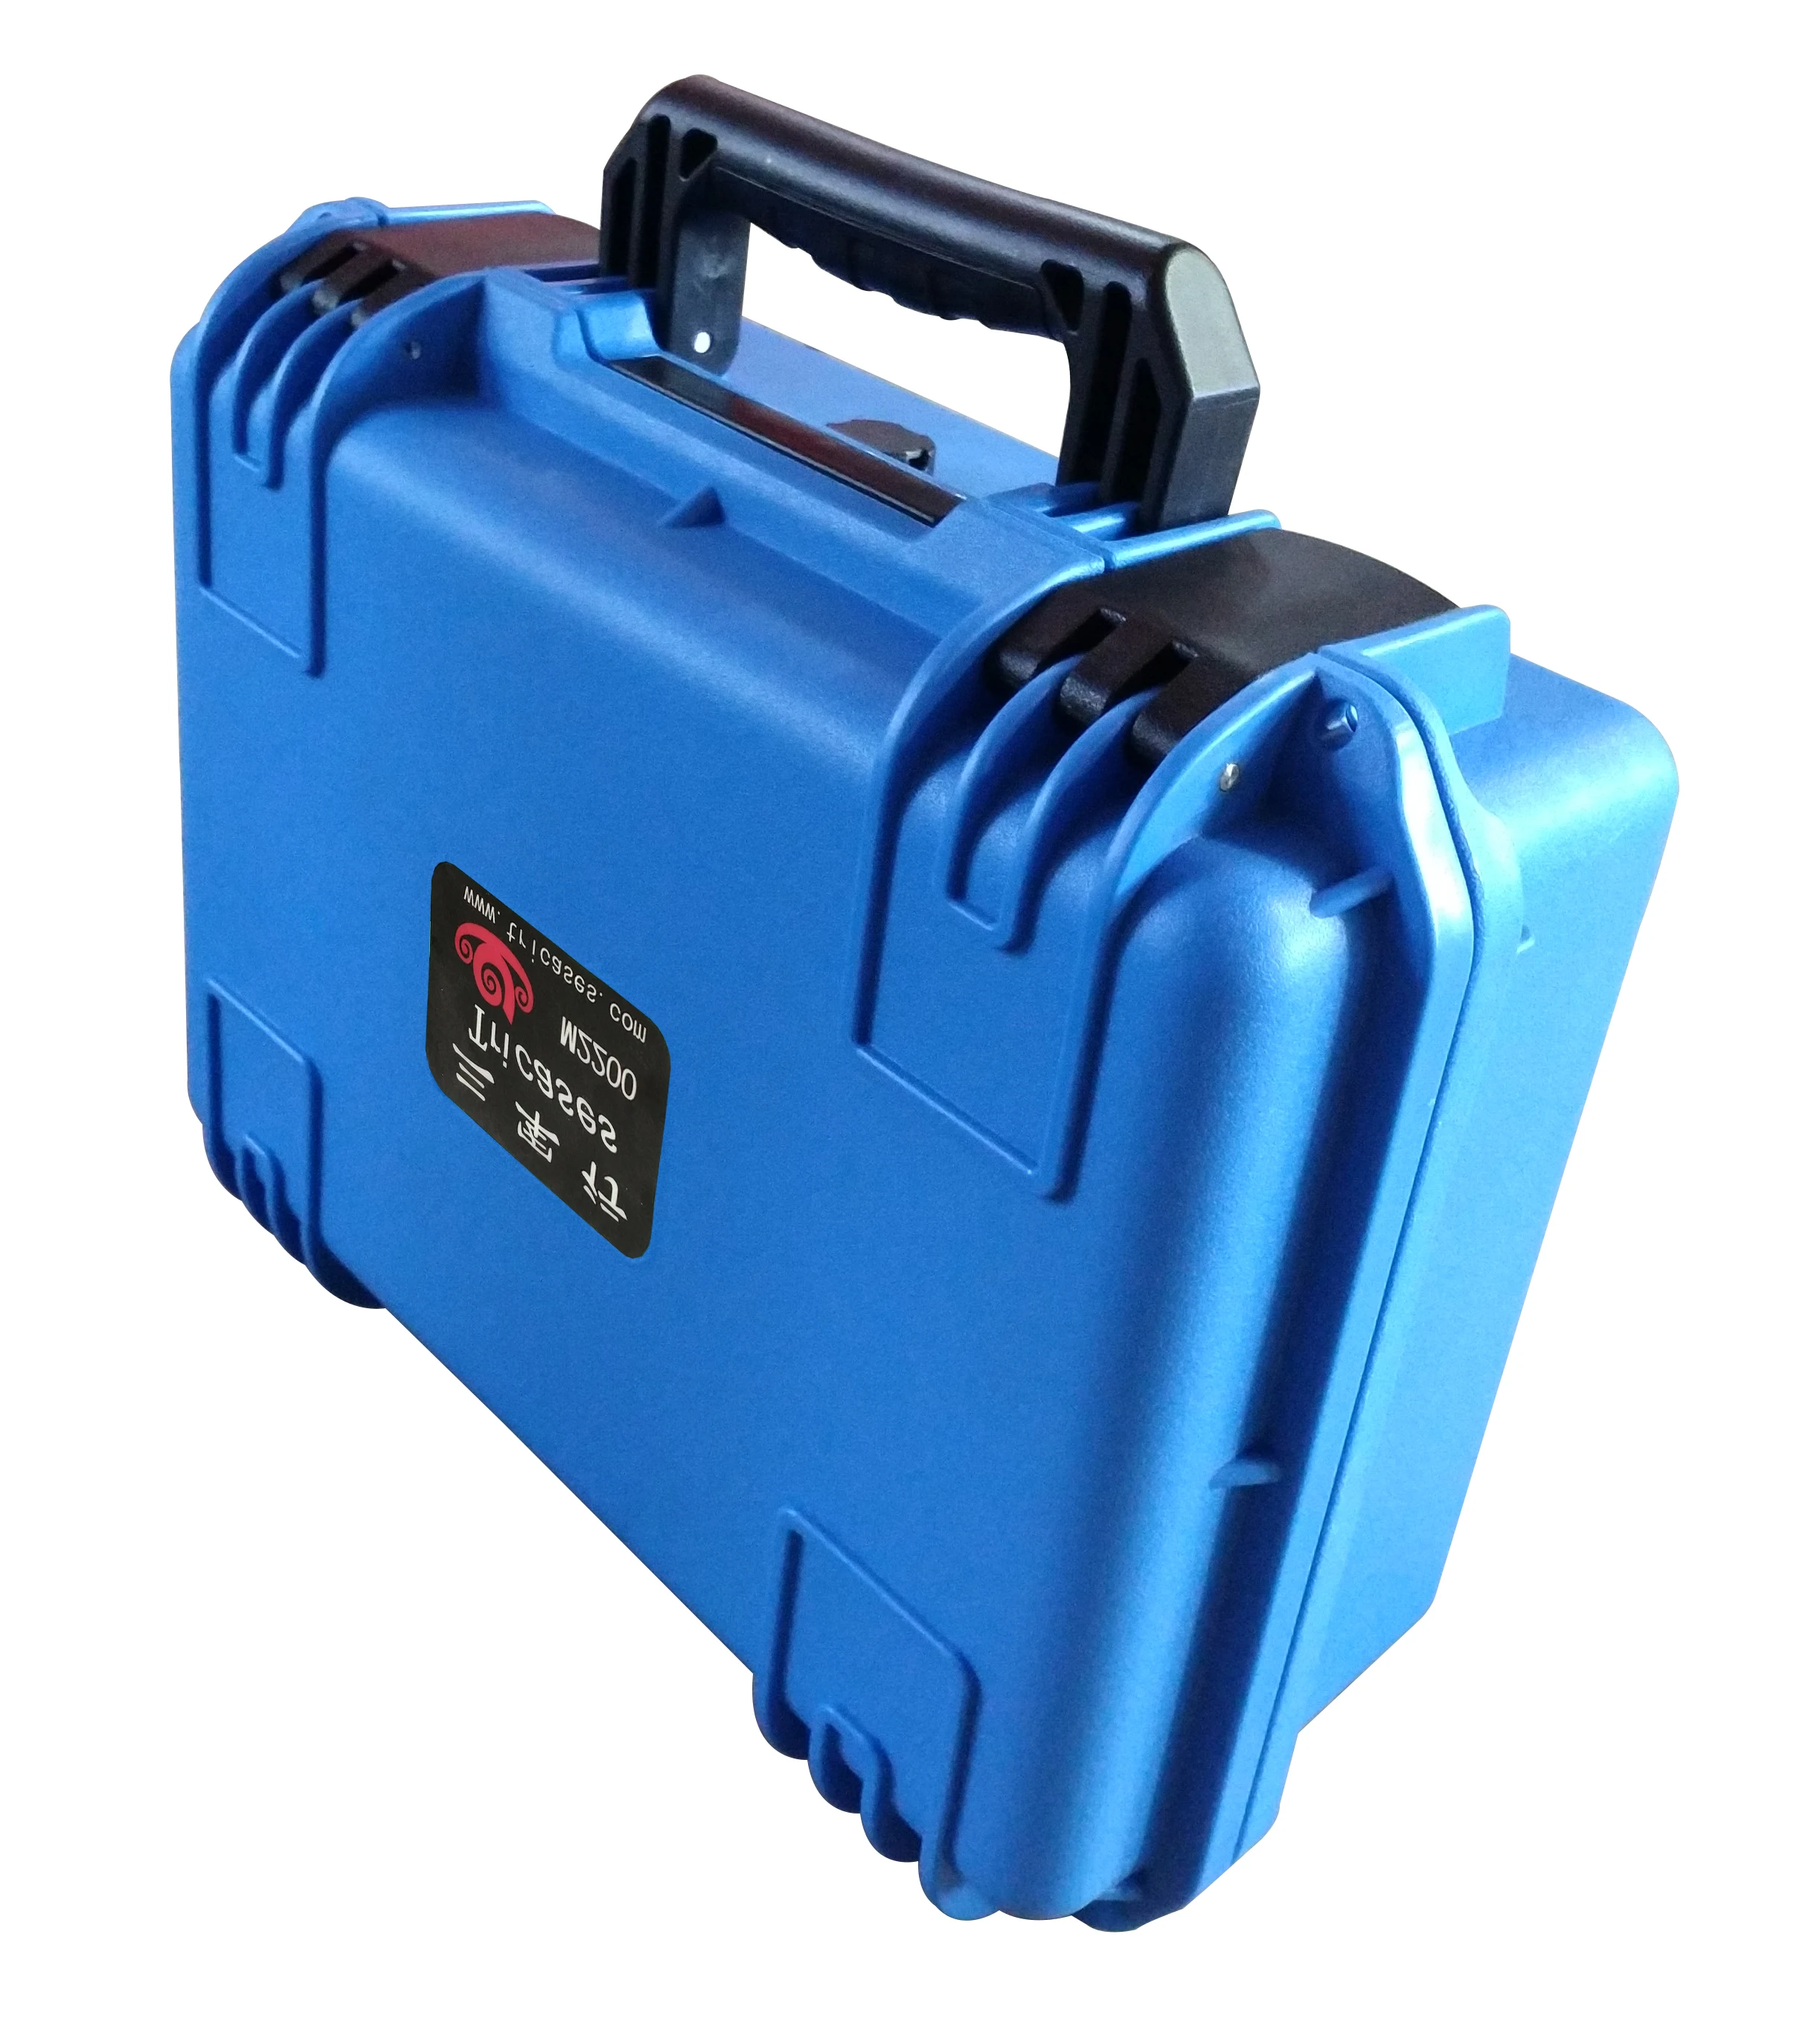 Tricases fabrika yeni gelmesi mavi renk IP67 su geçirmez darbeye dayanıklı sert PP plastik taşıma alet çantası enstrüman için M2200 . ' - ' . 0